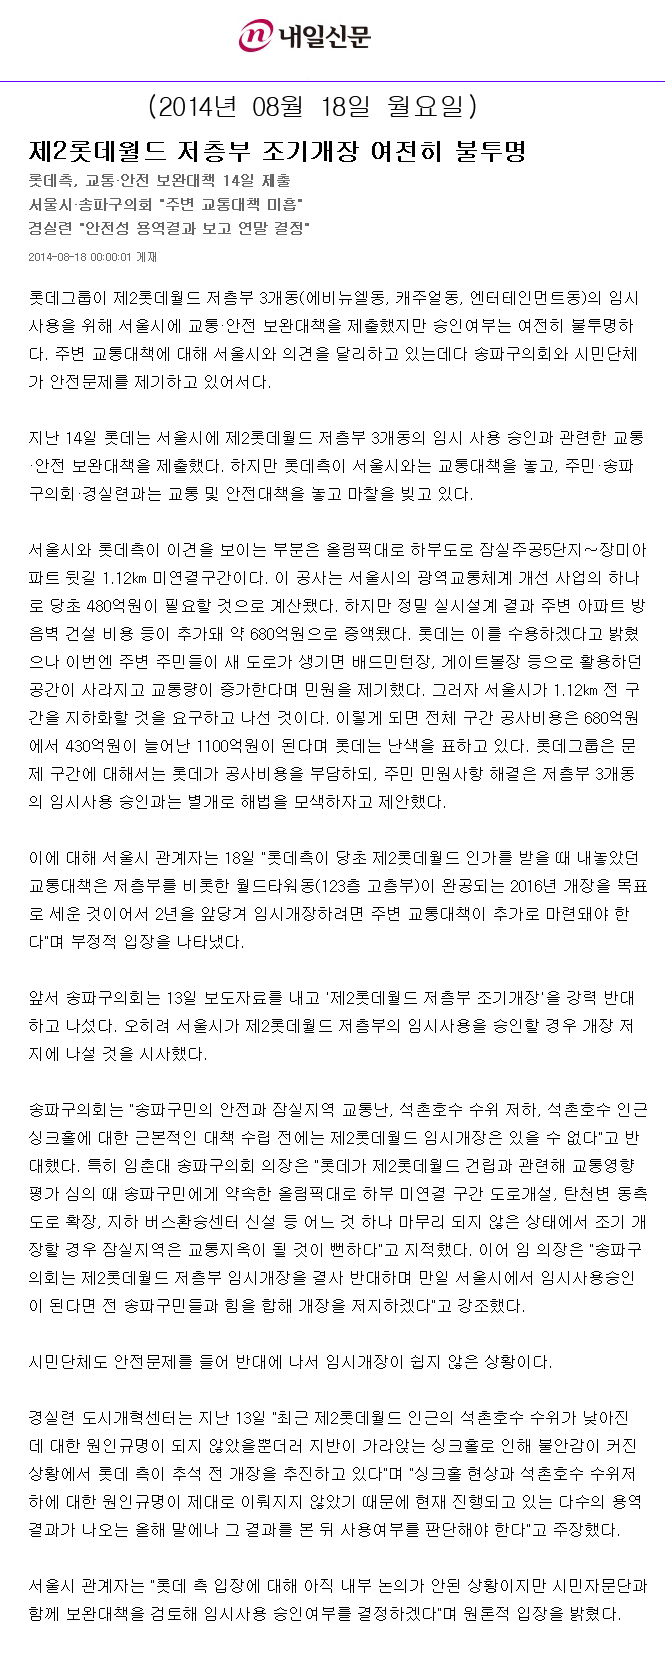 제2롯데월드 저층부 조기개장 여전히 불투명 [내일신문] - 1